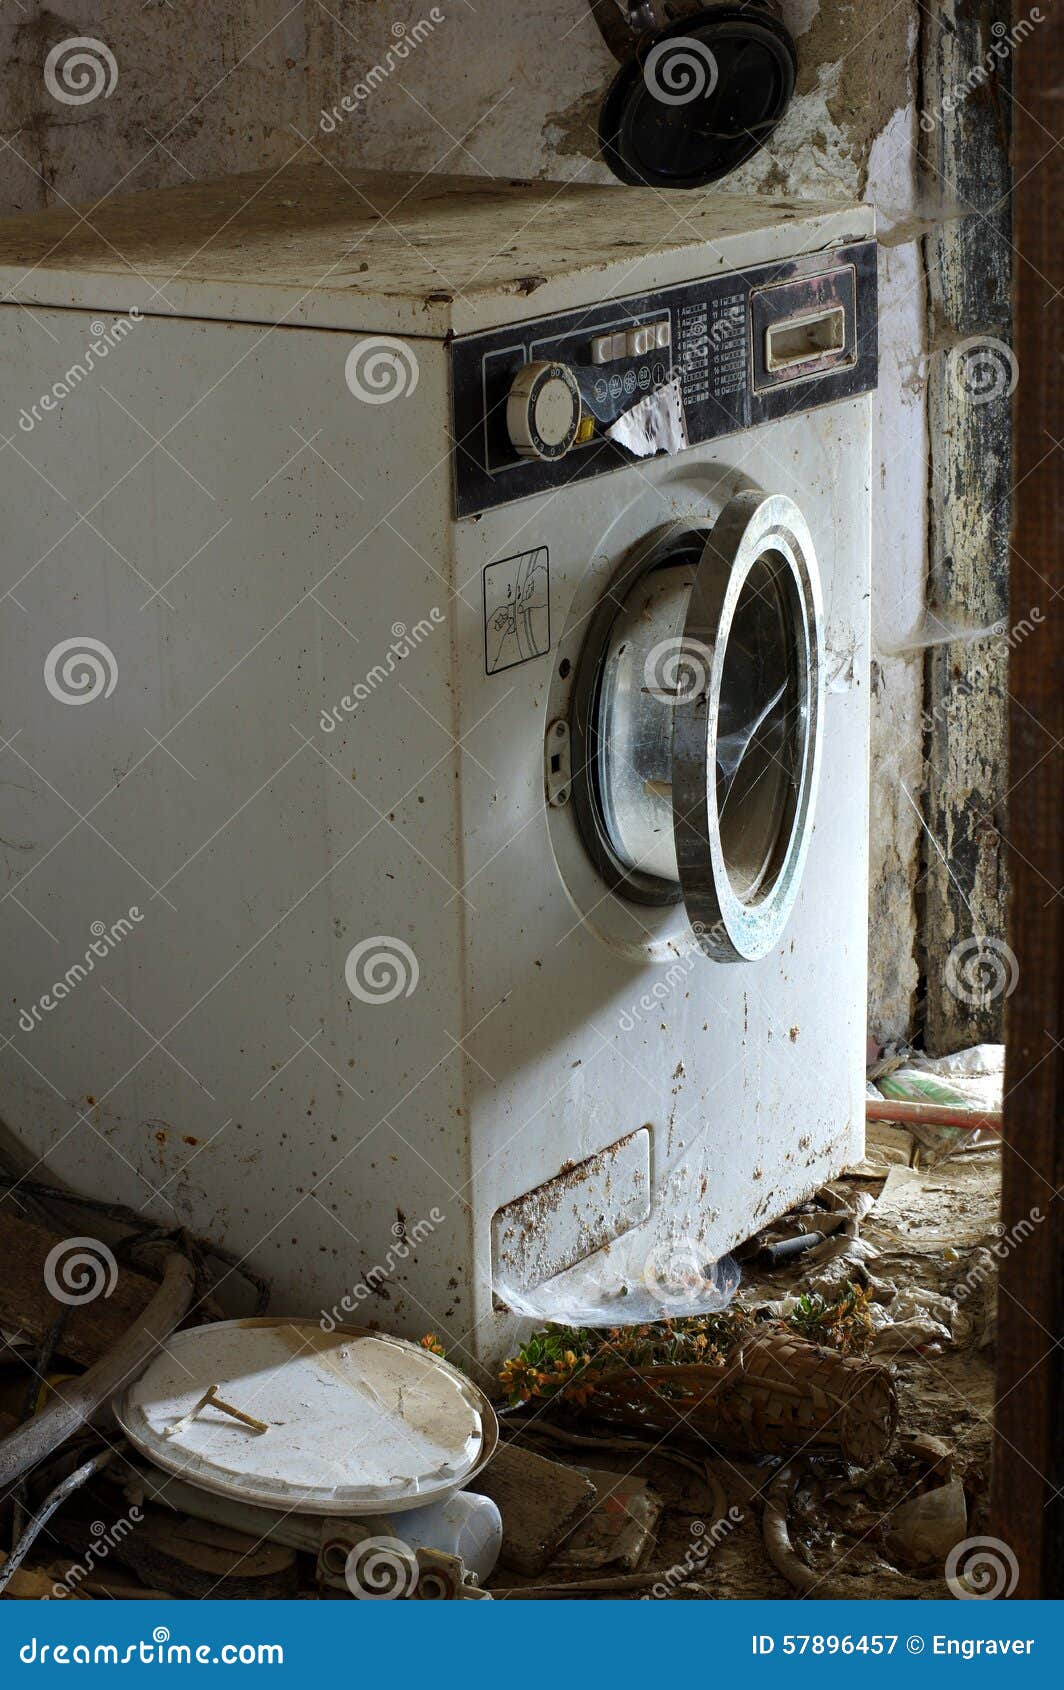 Разбитые стиральные машины. Сломанная стиральная машина. Поломанная стиральная машинка. Старая стиральная машина. Старая сломанная стиральная машина.